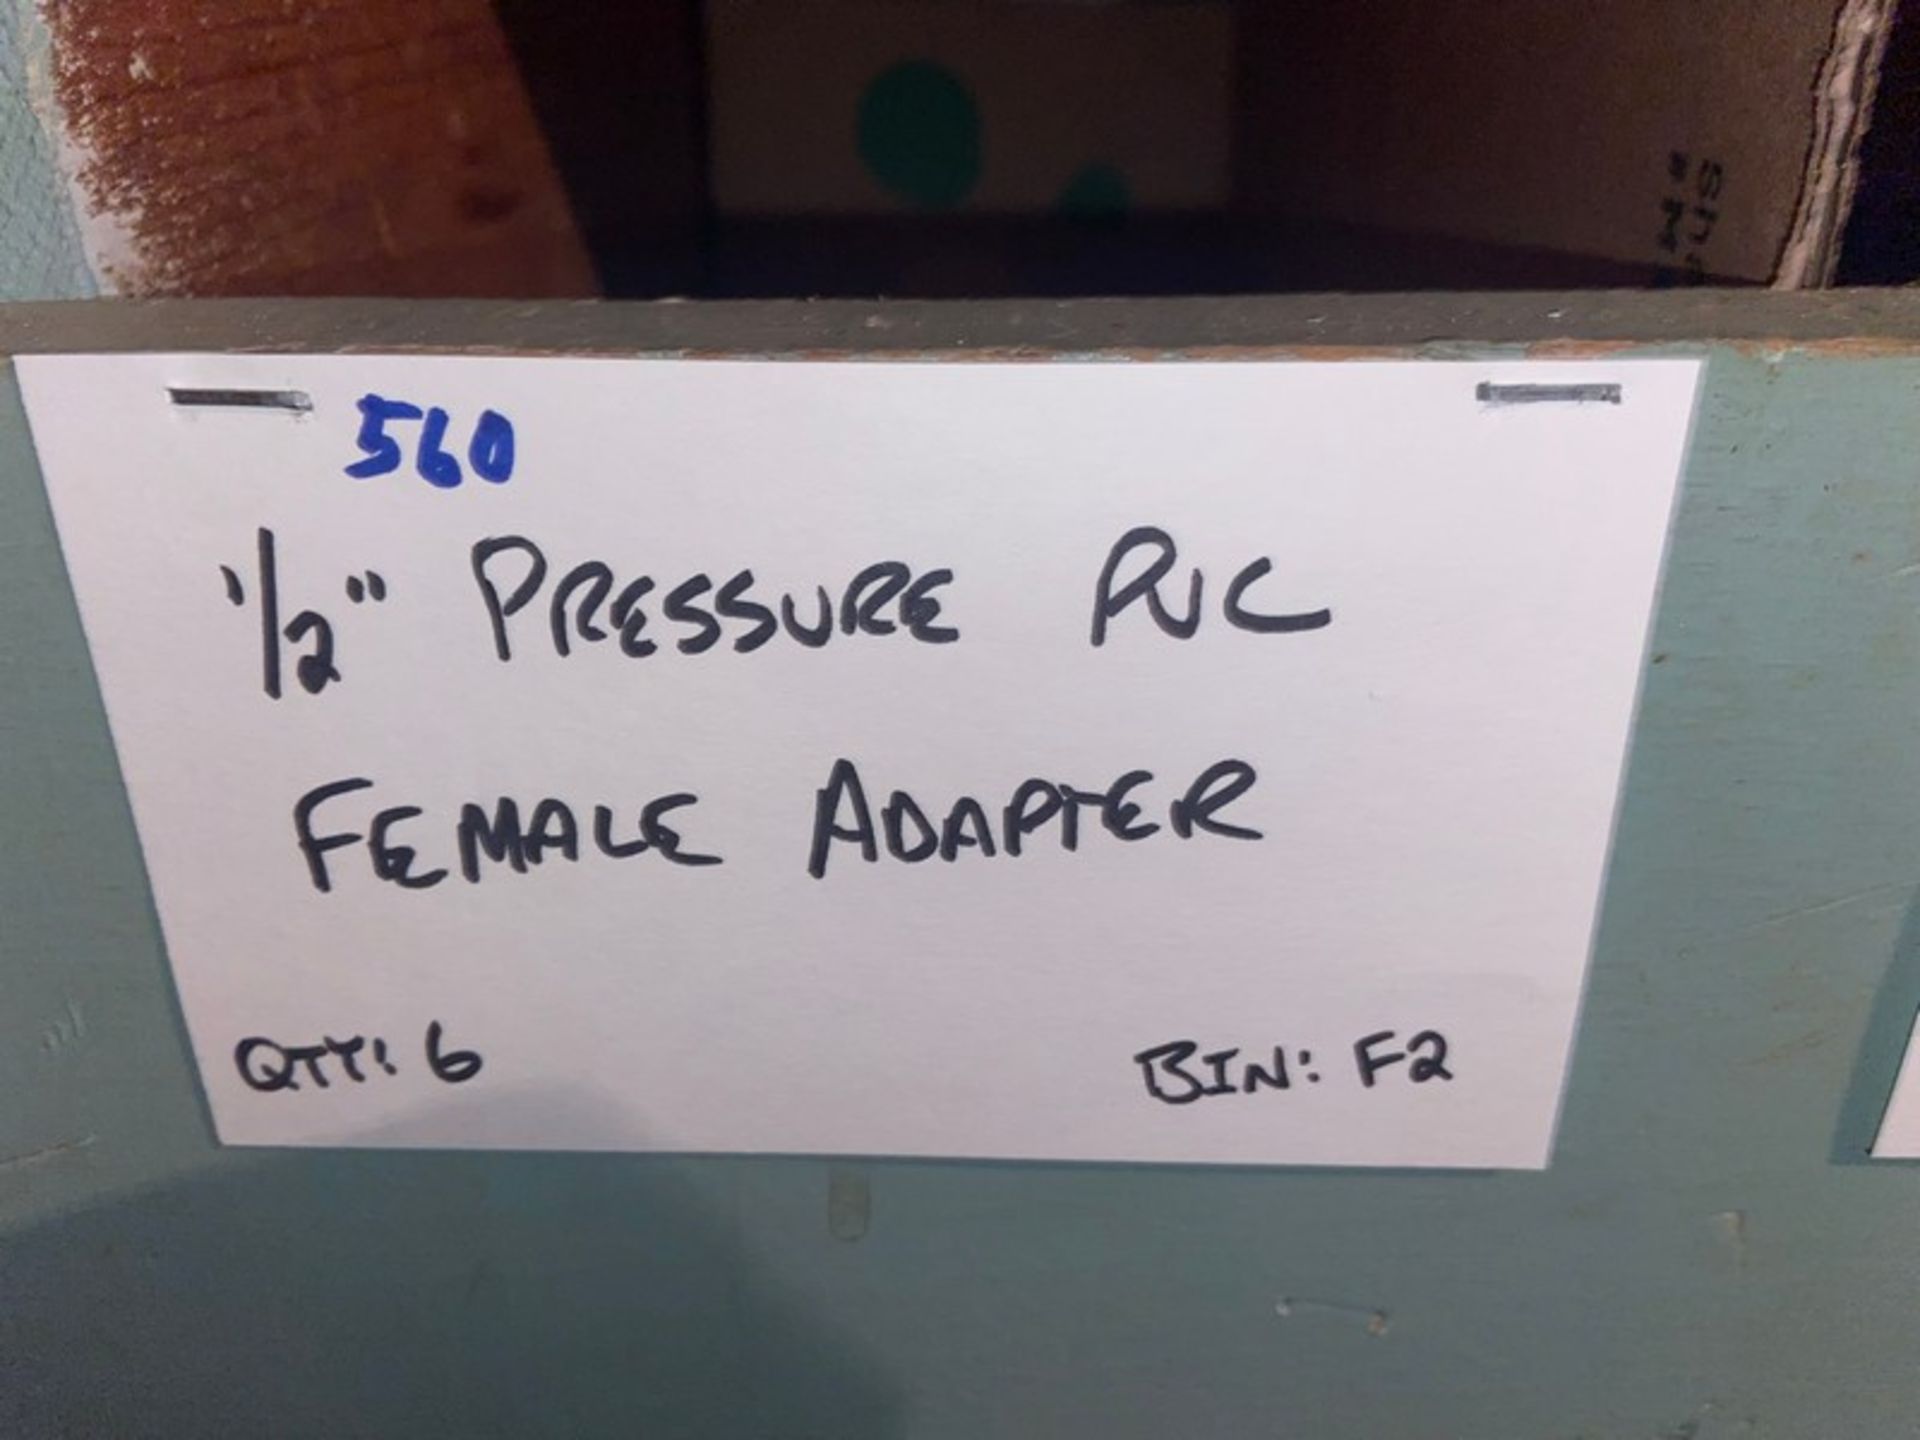 (1) 1/2" Pressure PVC Male Adapter (Bin: F2); (6) 1/2" Pressure PVC Female Adapter (LOCATED IN - Image 4 of 11